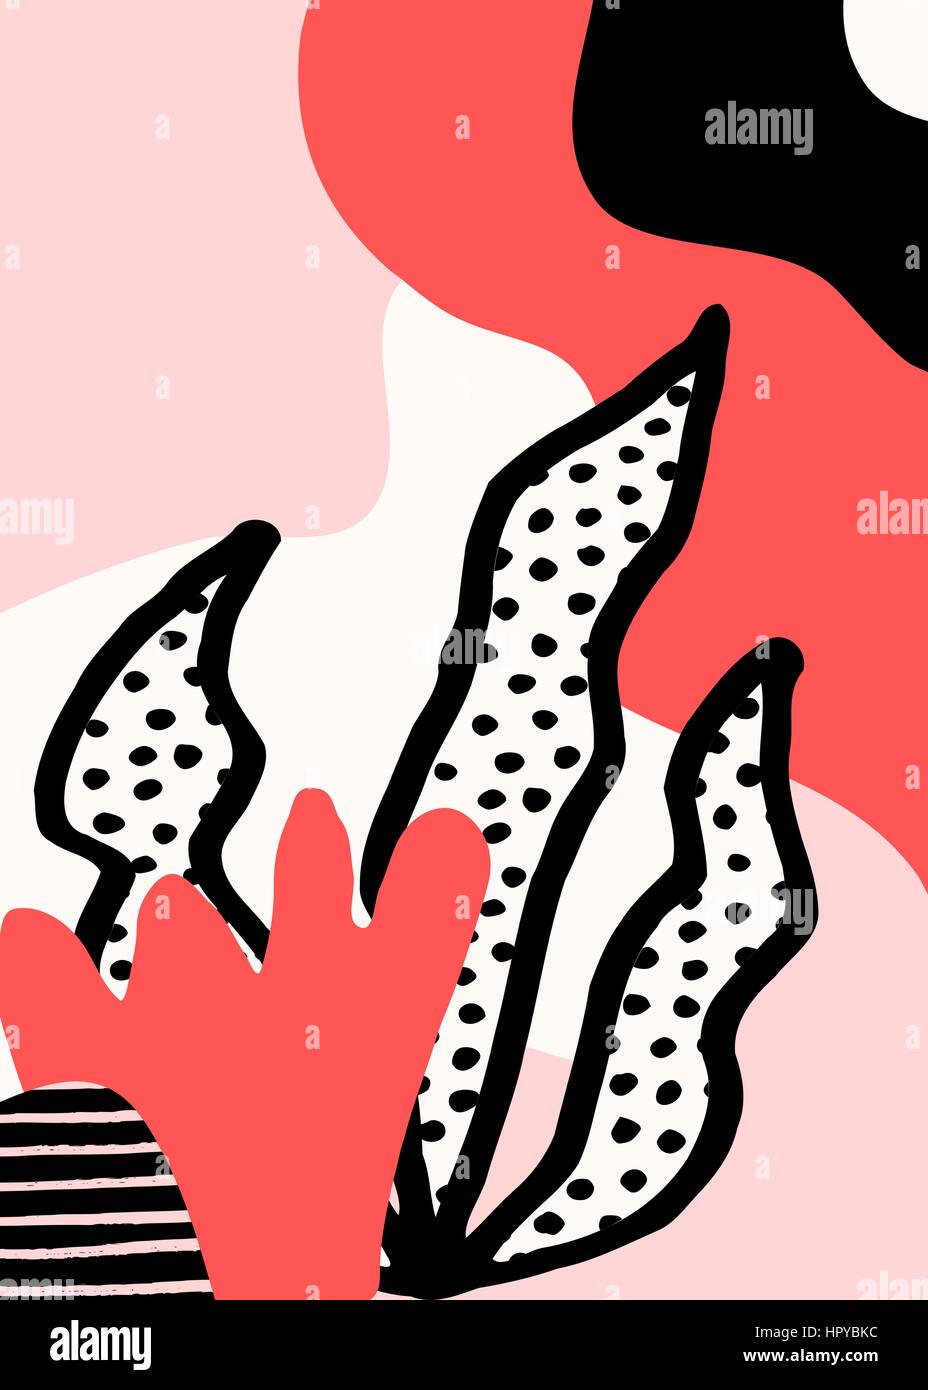 Collage Stildesign mit abstrakten und organische Formen in Pastell rosa, rot, schwarz und Creme. Abstrakte Textil, Geschenkpapier, Wand-Kunst-Design. Stock Vektor